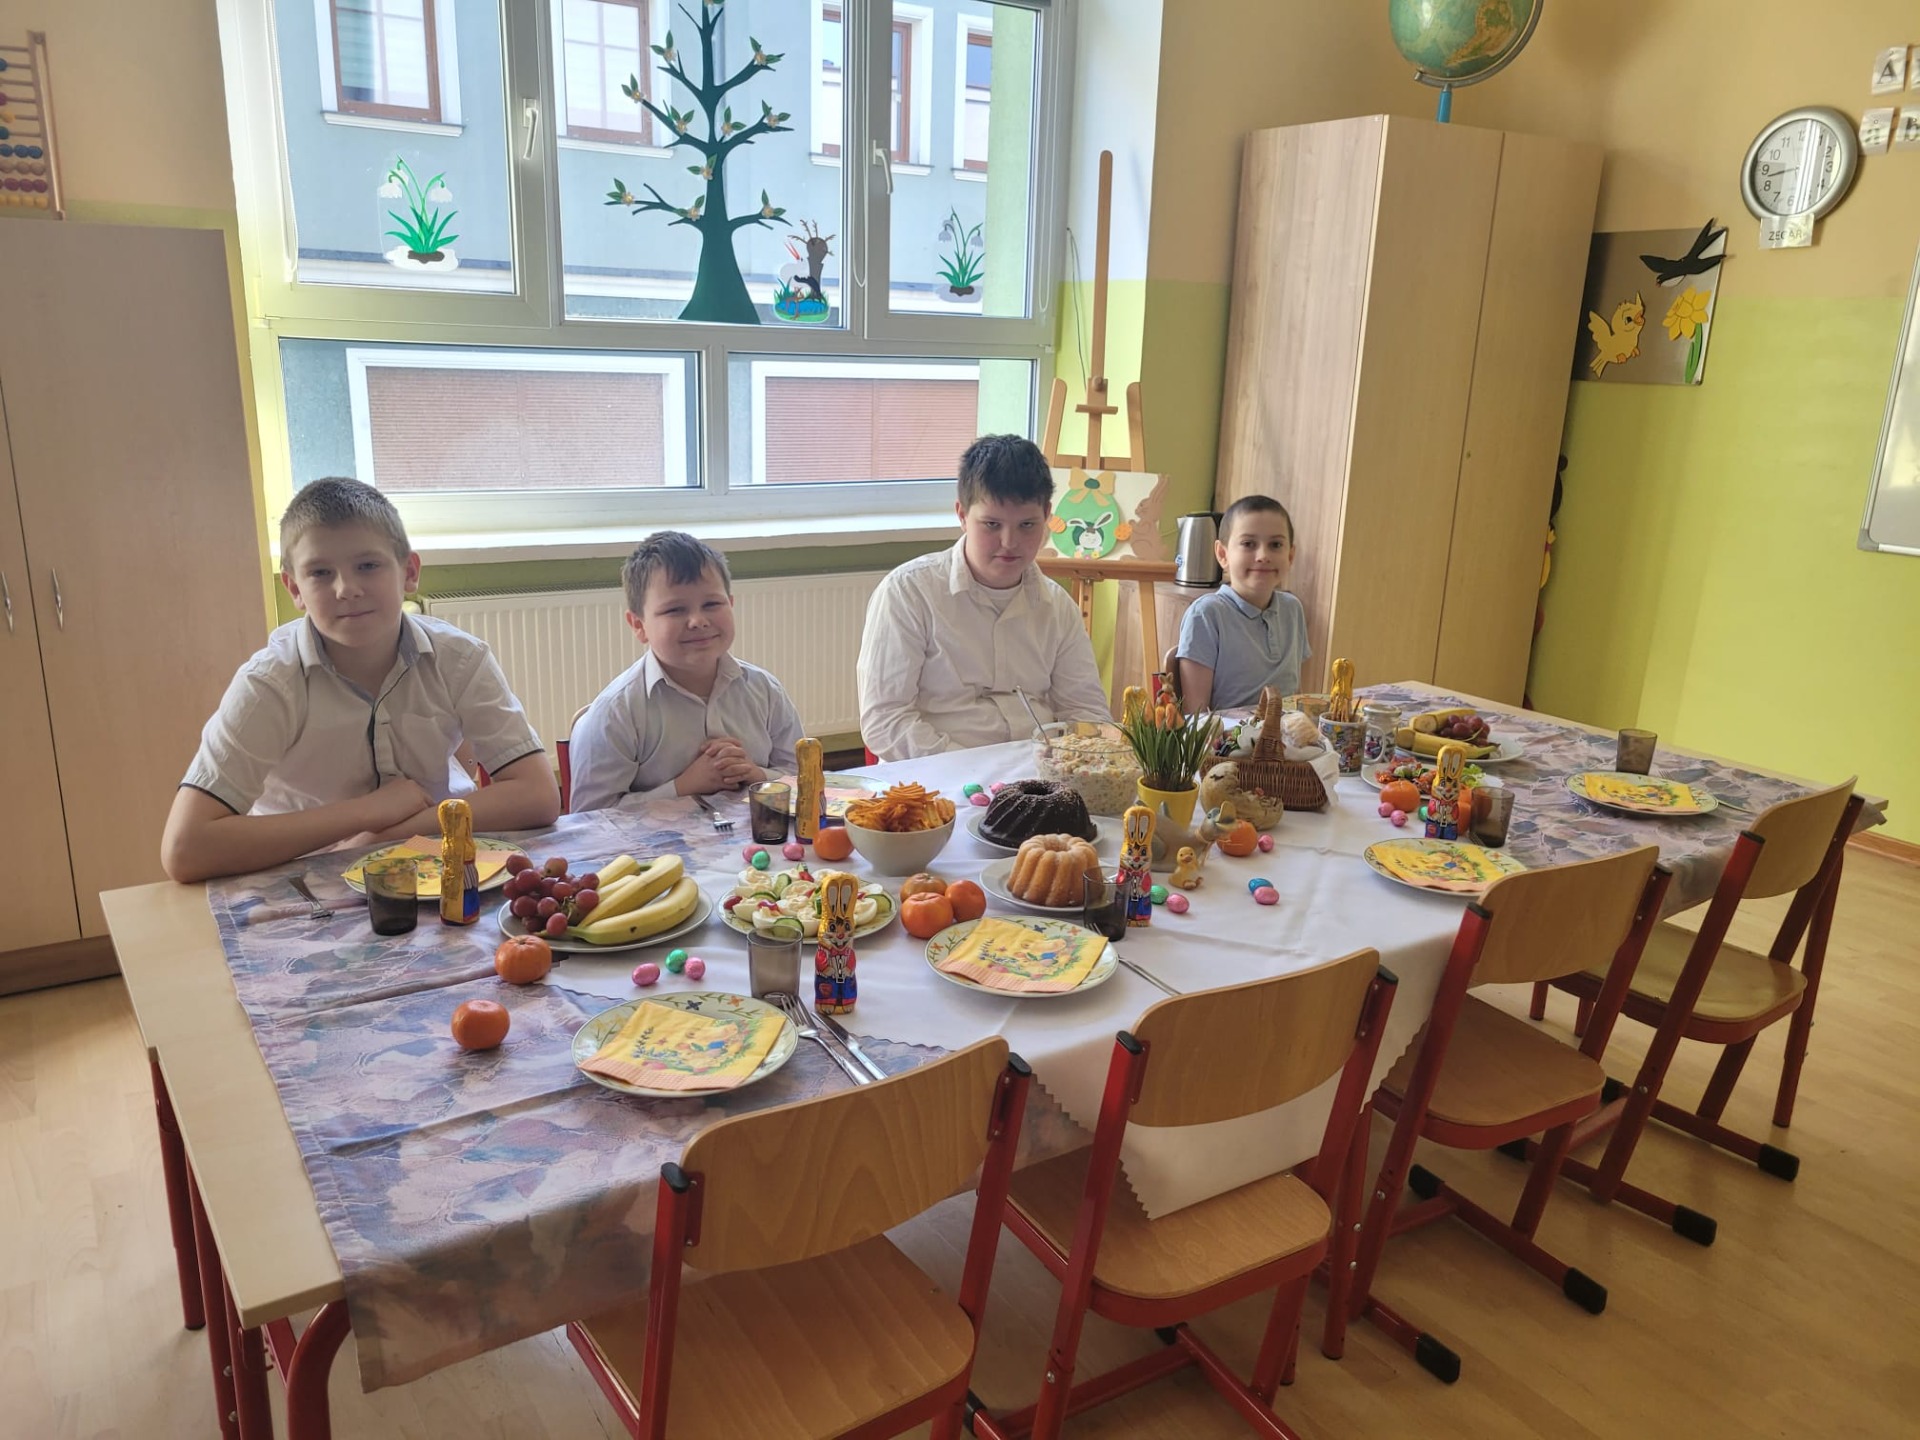 Śniadanie Wielkanocne w klasie p. Kitowskiej - Obrazek 3